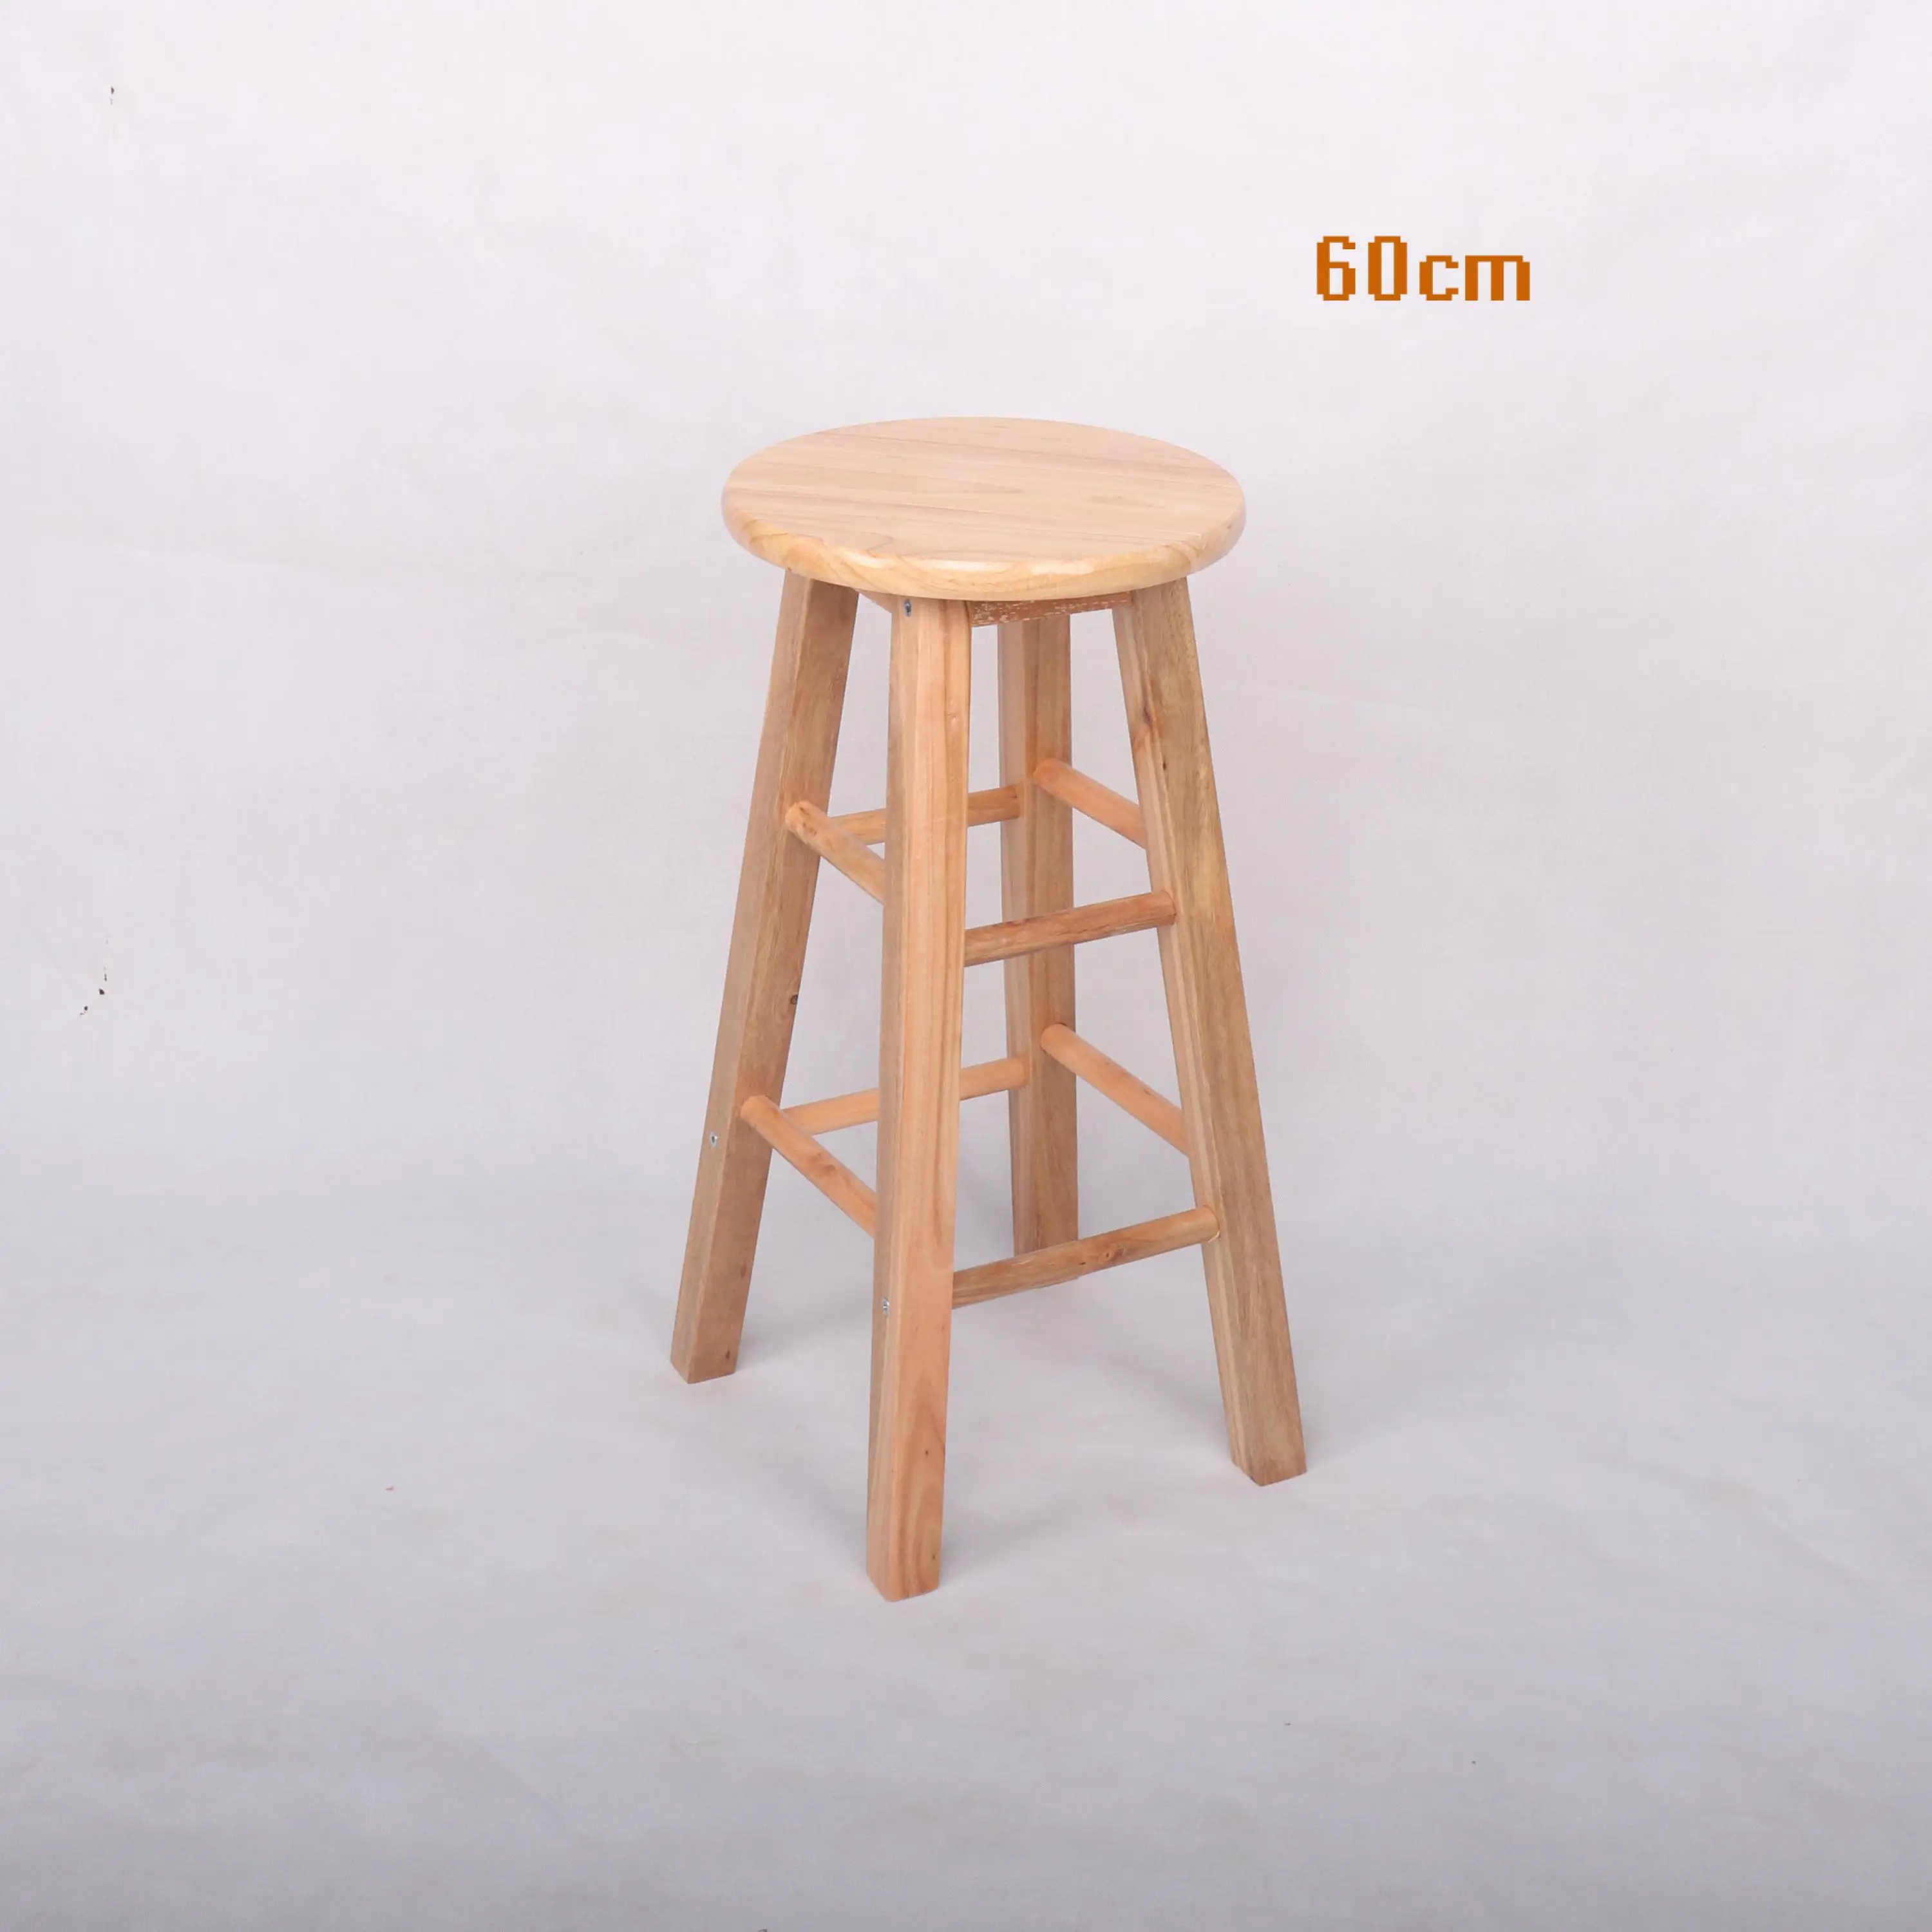 Твердый деревянный барный стул высокий барный стул резиновый деревянный стул-лестница высокий барный стул - Цвет: 60cm high